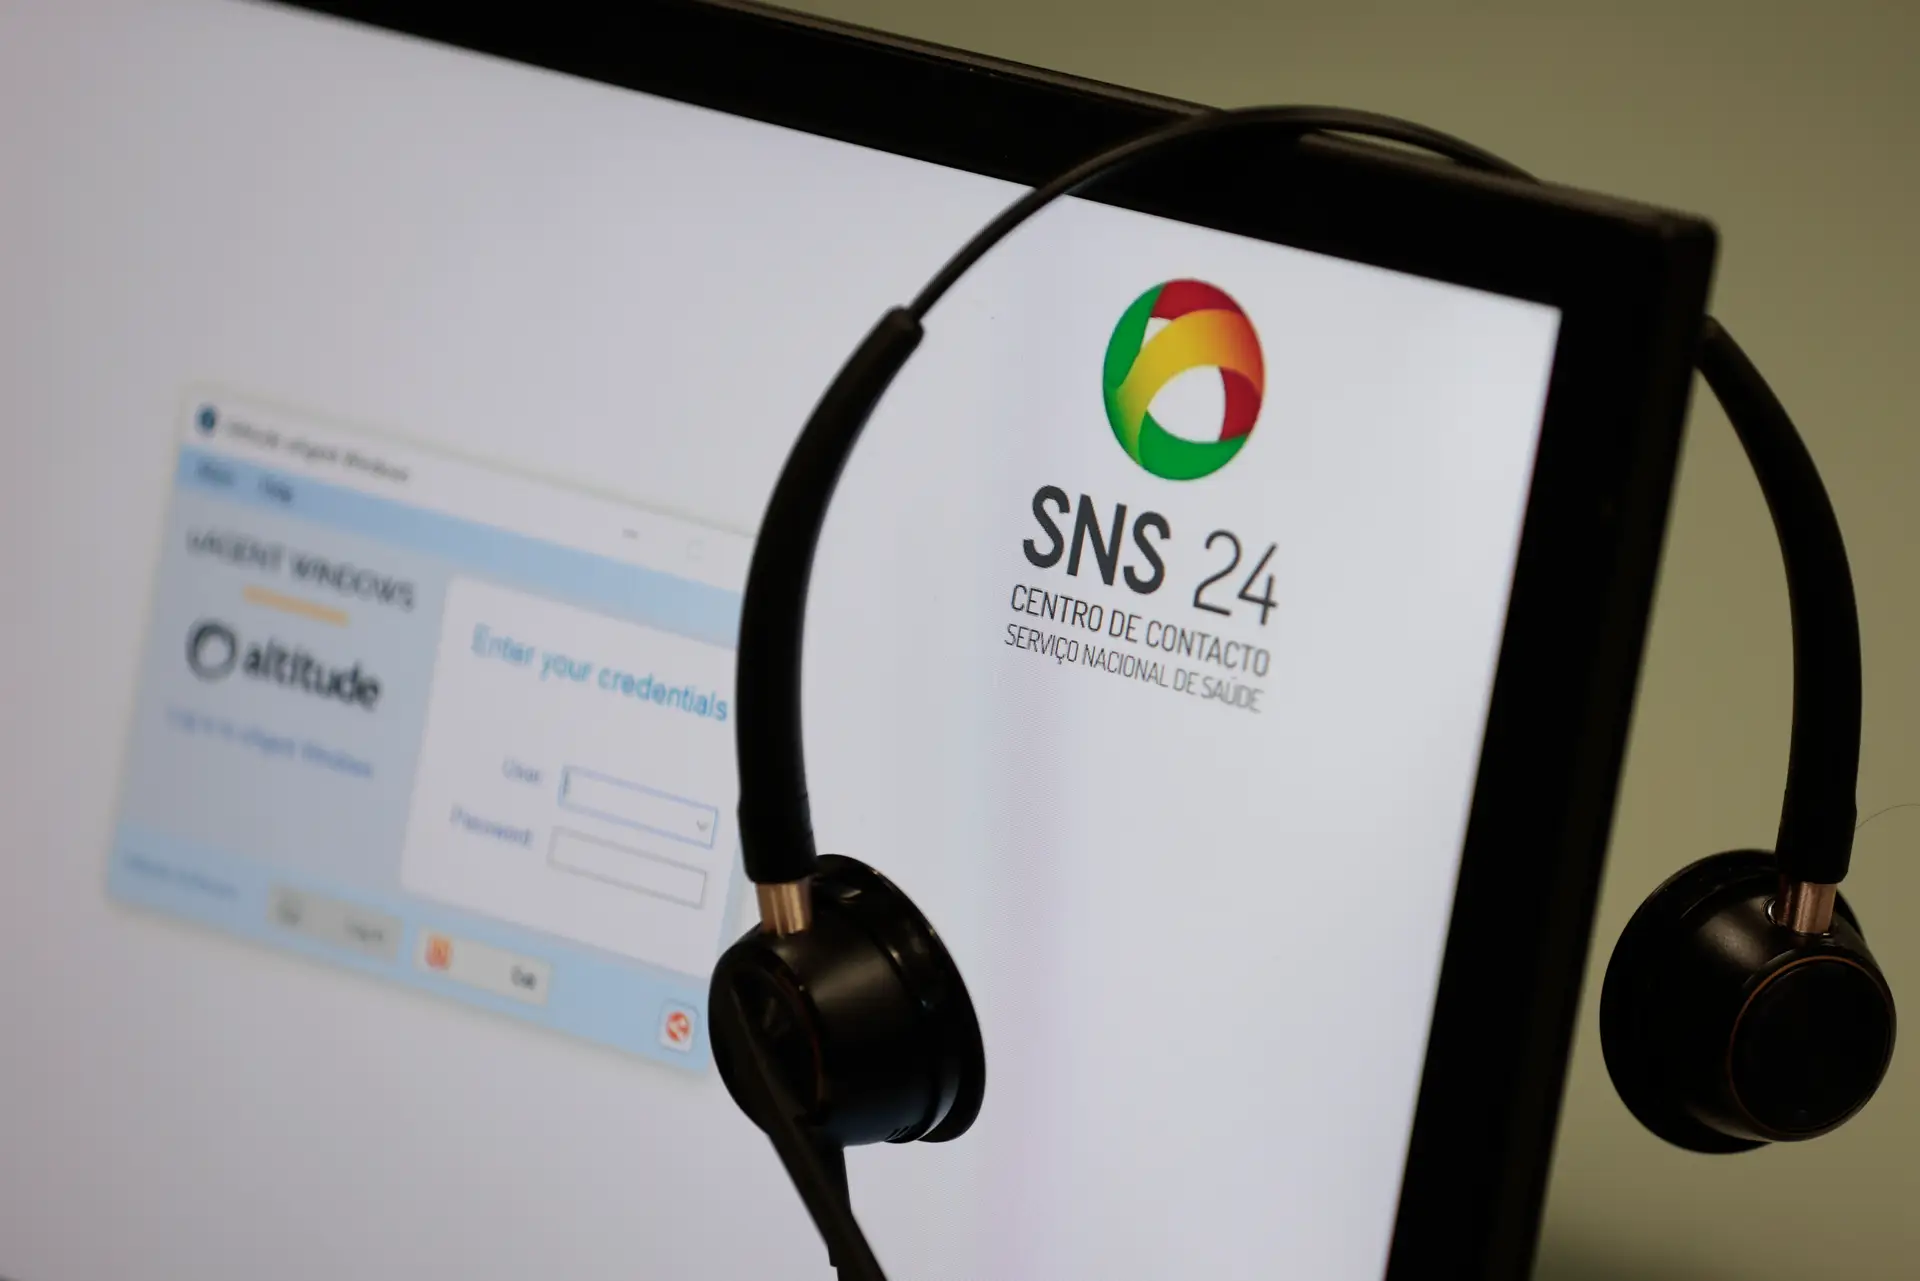 Linha SNS 24 atendeu 9 milhões de chamadas, a aplicação foi descarregada oito milhões de vezes e o portal acedido por 27 milhões de pessoas